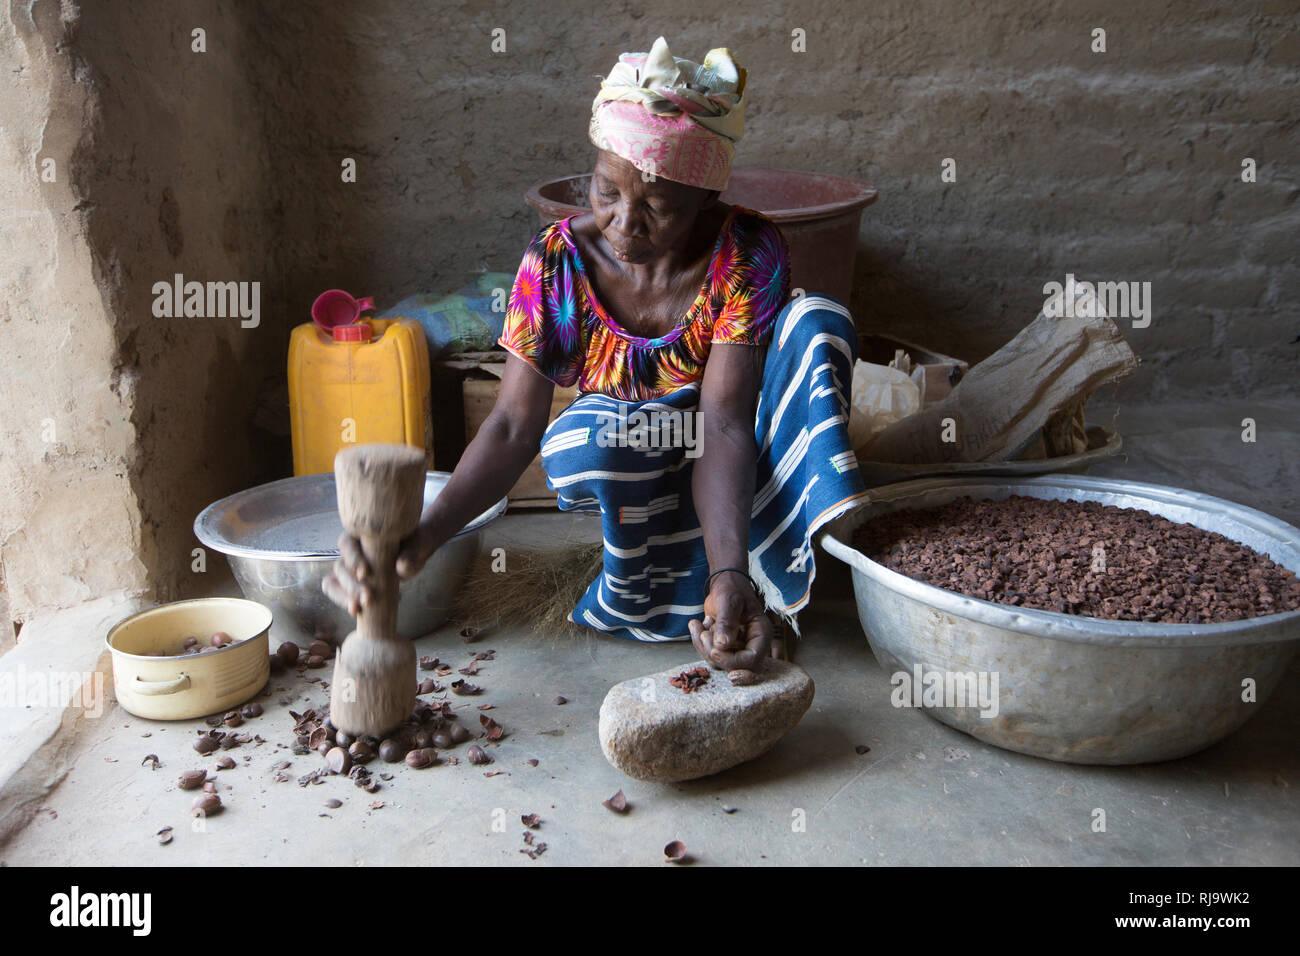 Baribsi Dorf, Yako, Burkina Faso, 30. November 2016; Kwama Koudougou, Beschuss Shea-nüsse Für shea butter Baribsi's Dorf Frauen Warengruppe. Stockfoto